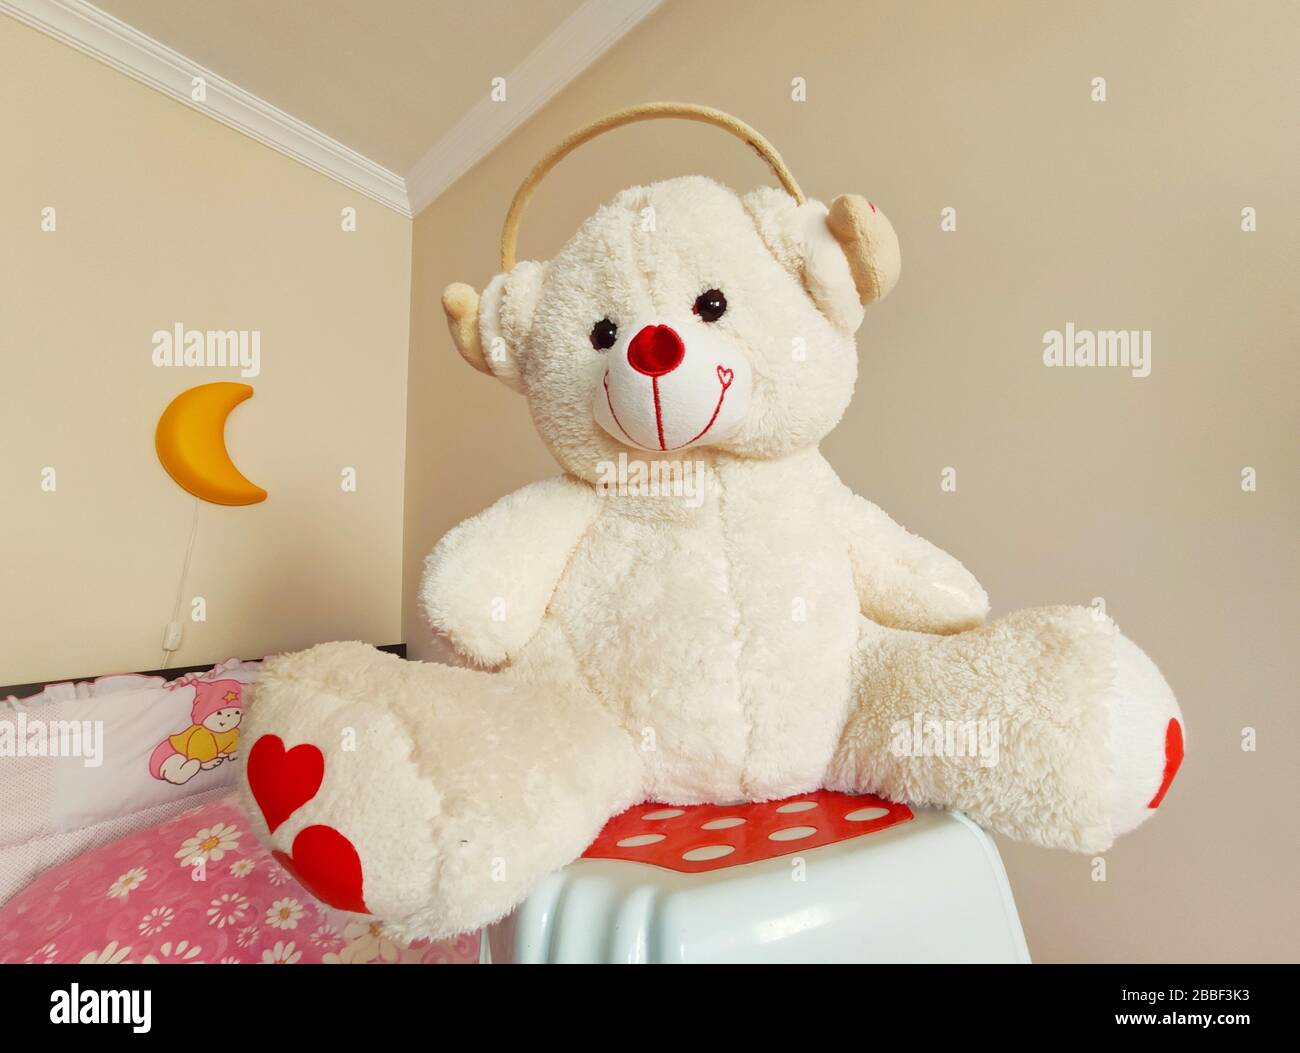 Tondybär. Spielkamerad für Kinder und süßer lächelnder freundlicher Bär. Stockfoto